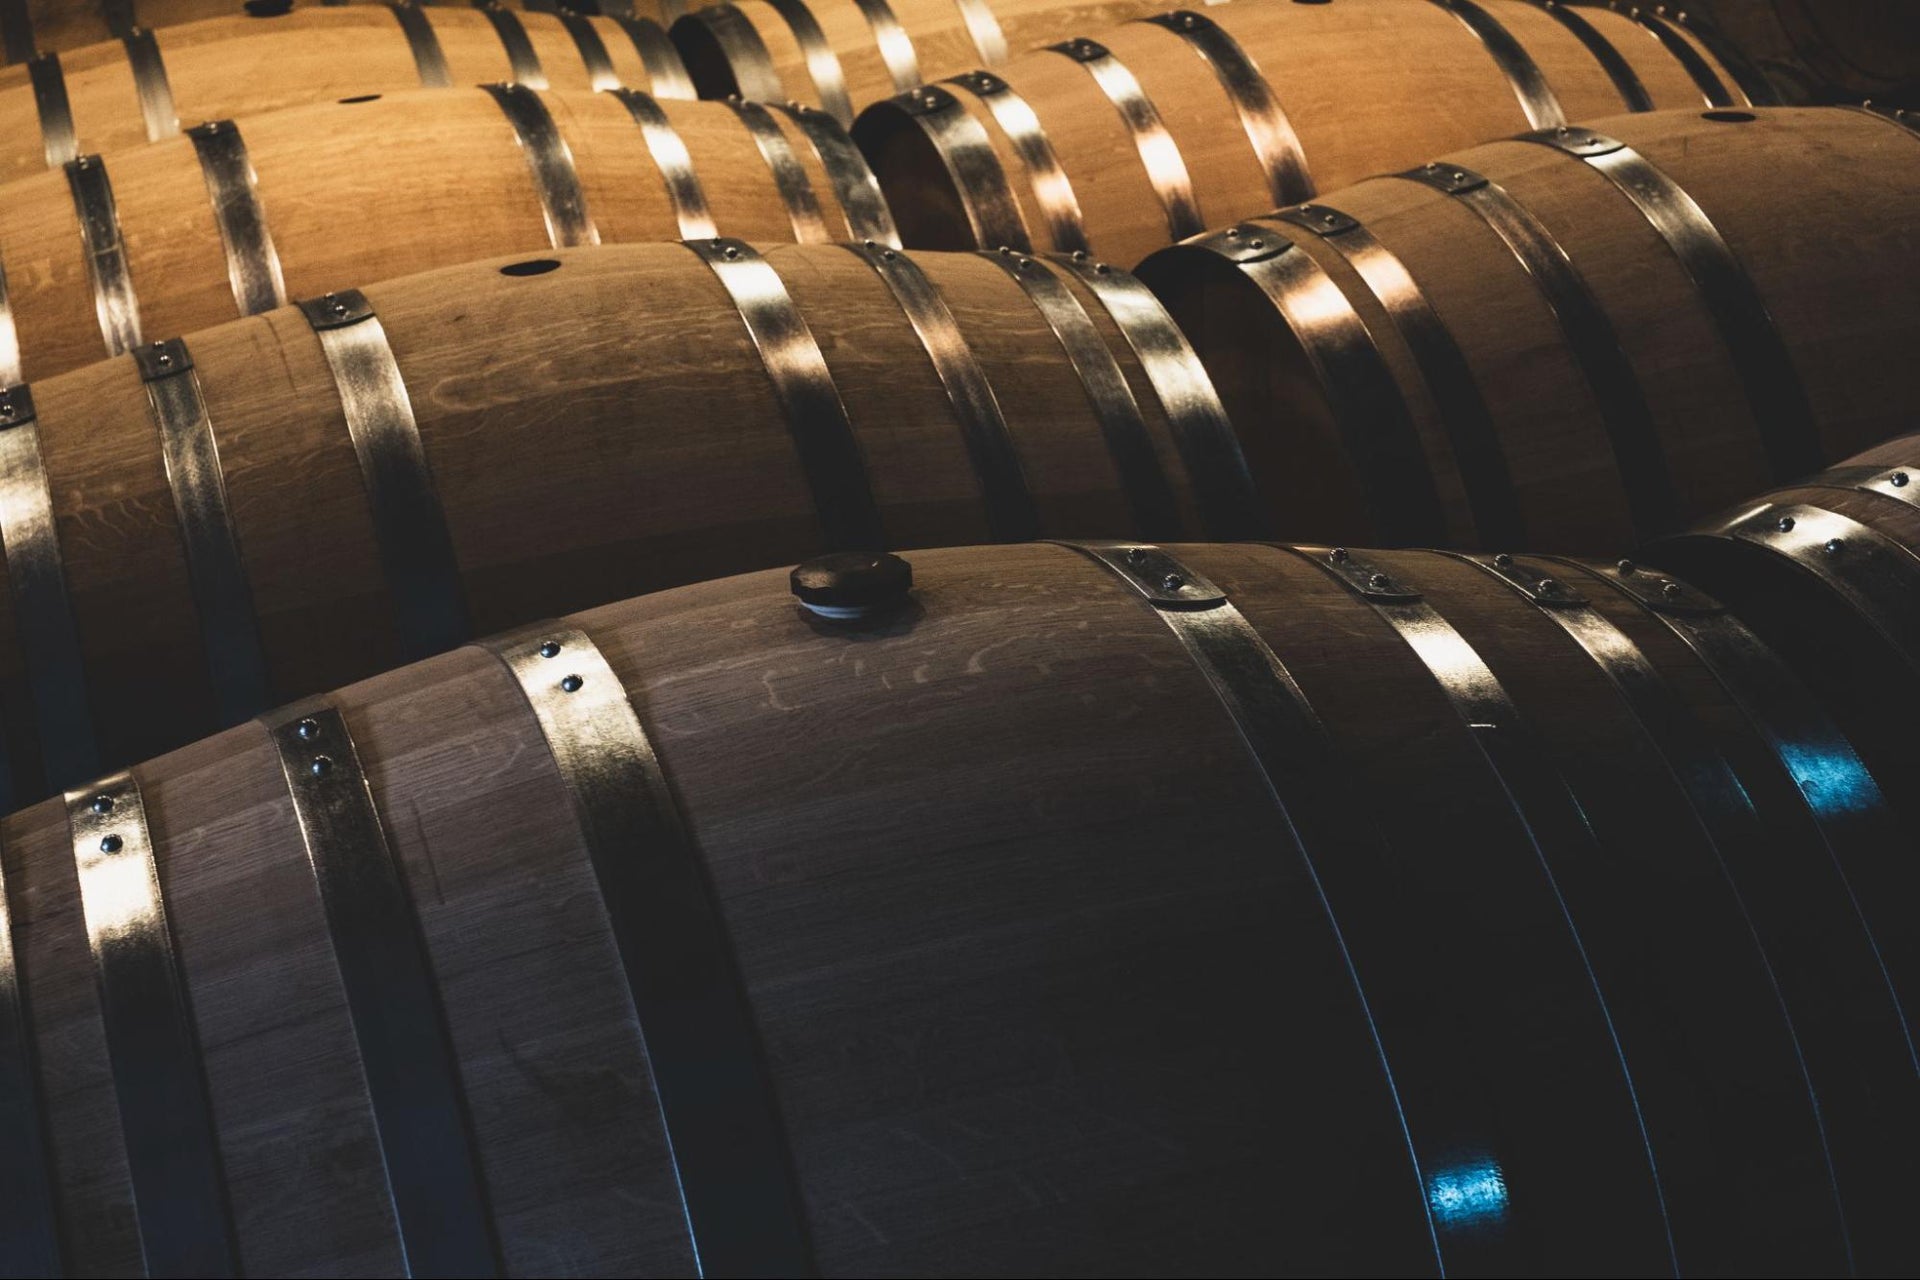 oak wine barrels for aging